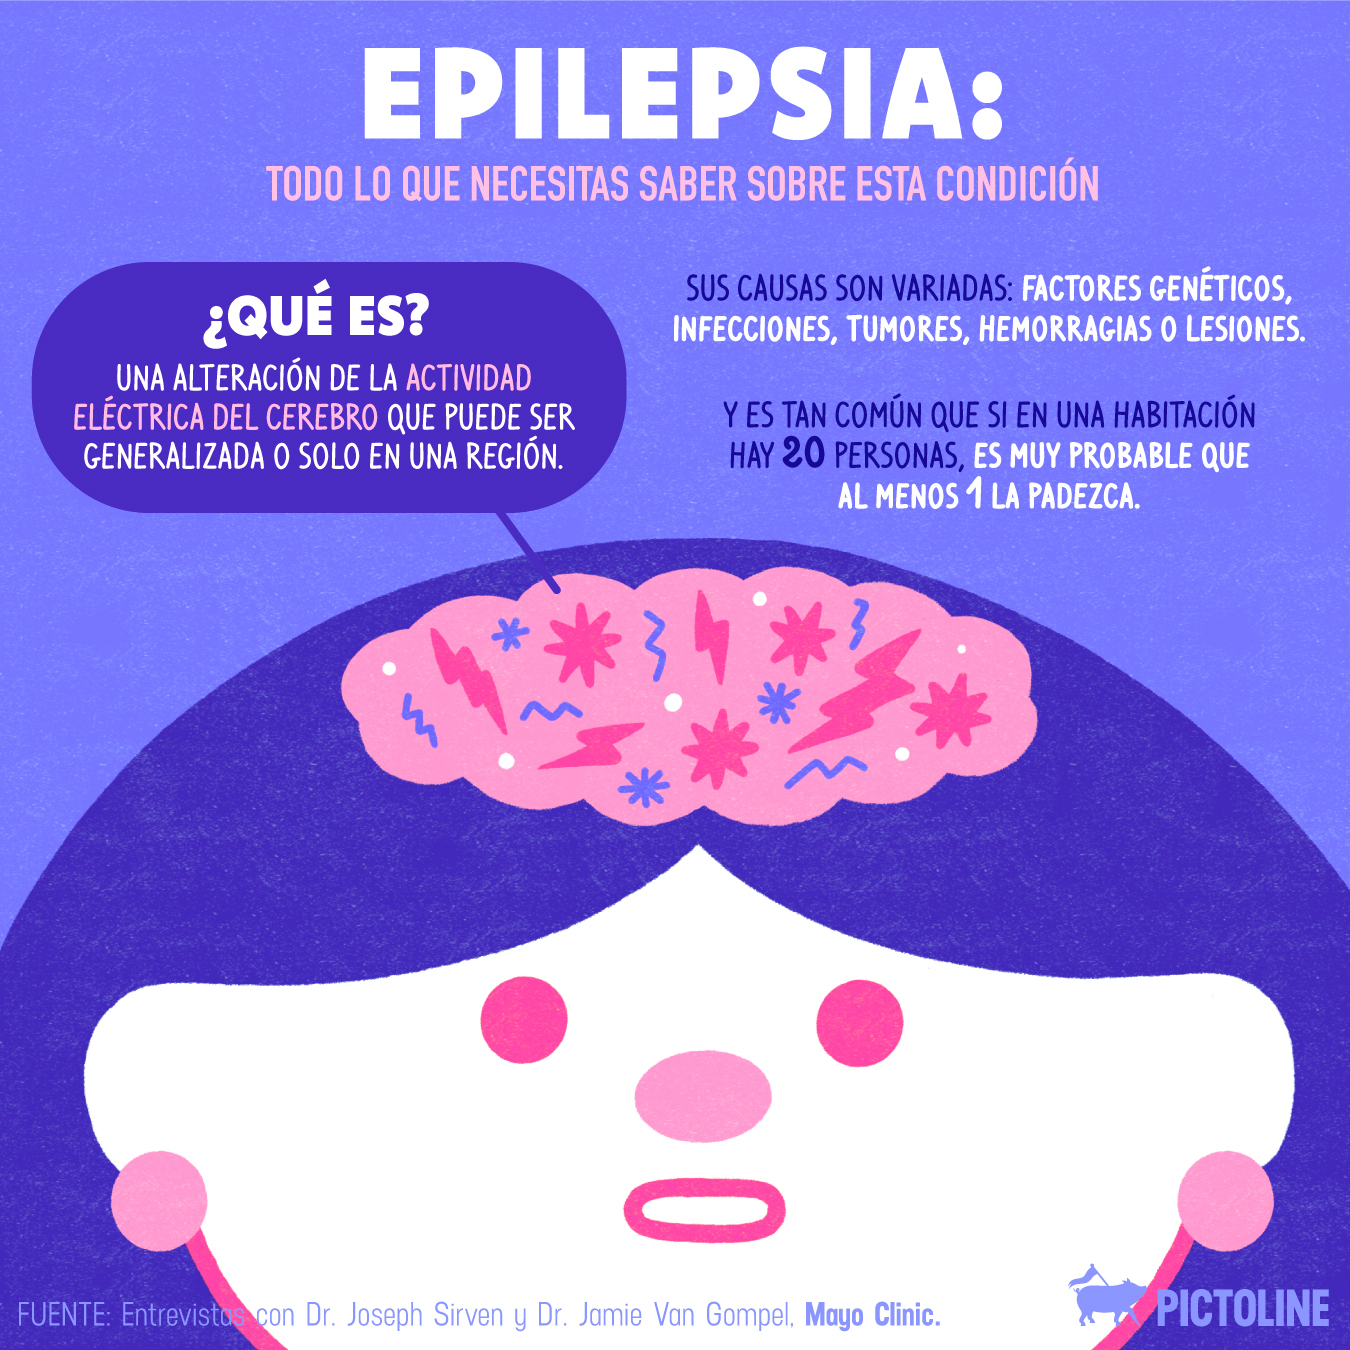 La epilepsia es tan común que si en un cuarto hay 20 personas, es muy probable que al menos 1 la padezca ☝️En el #DíaMundialParaLaConcientizaciónDeLaEpilepsia todo lo que necesitas saber sobre esta condición:#PurpleDay💜